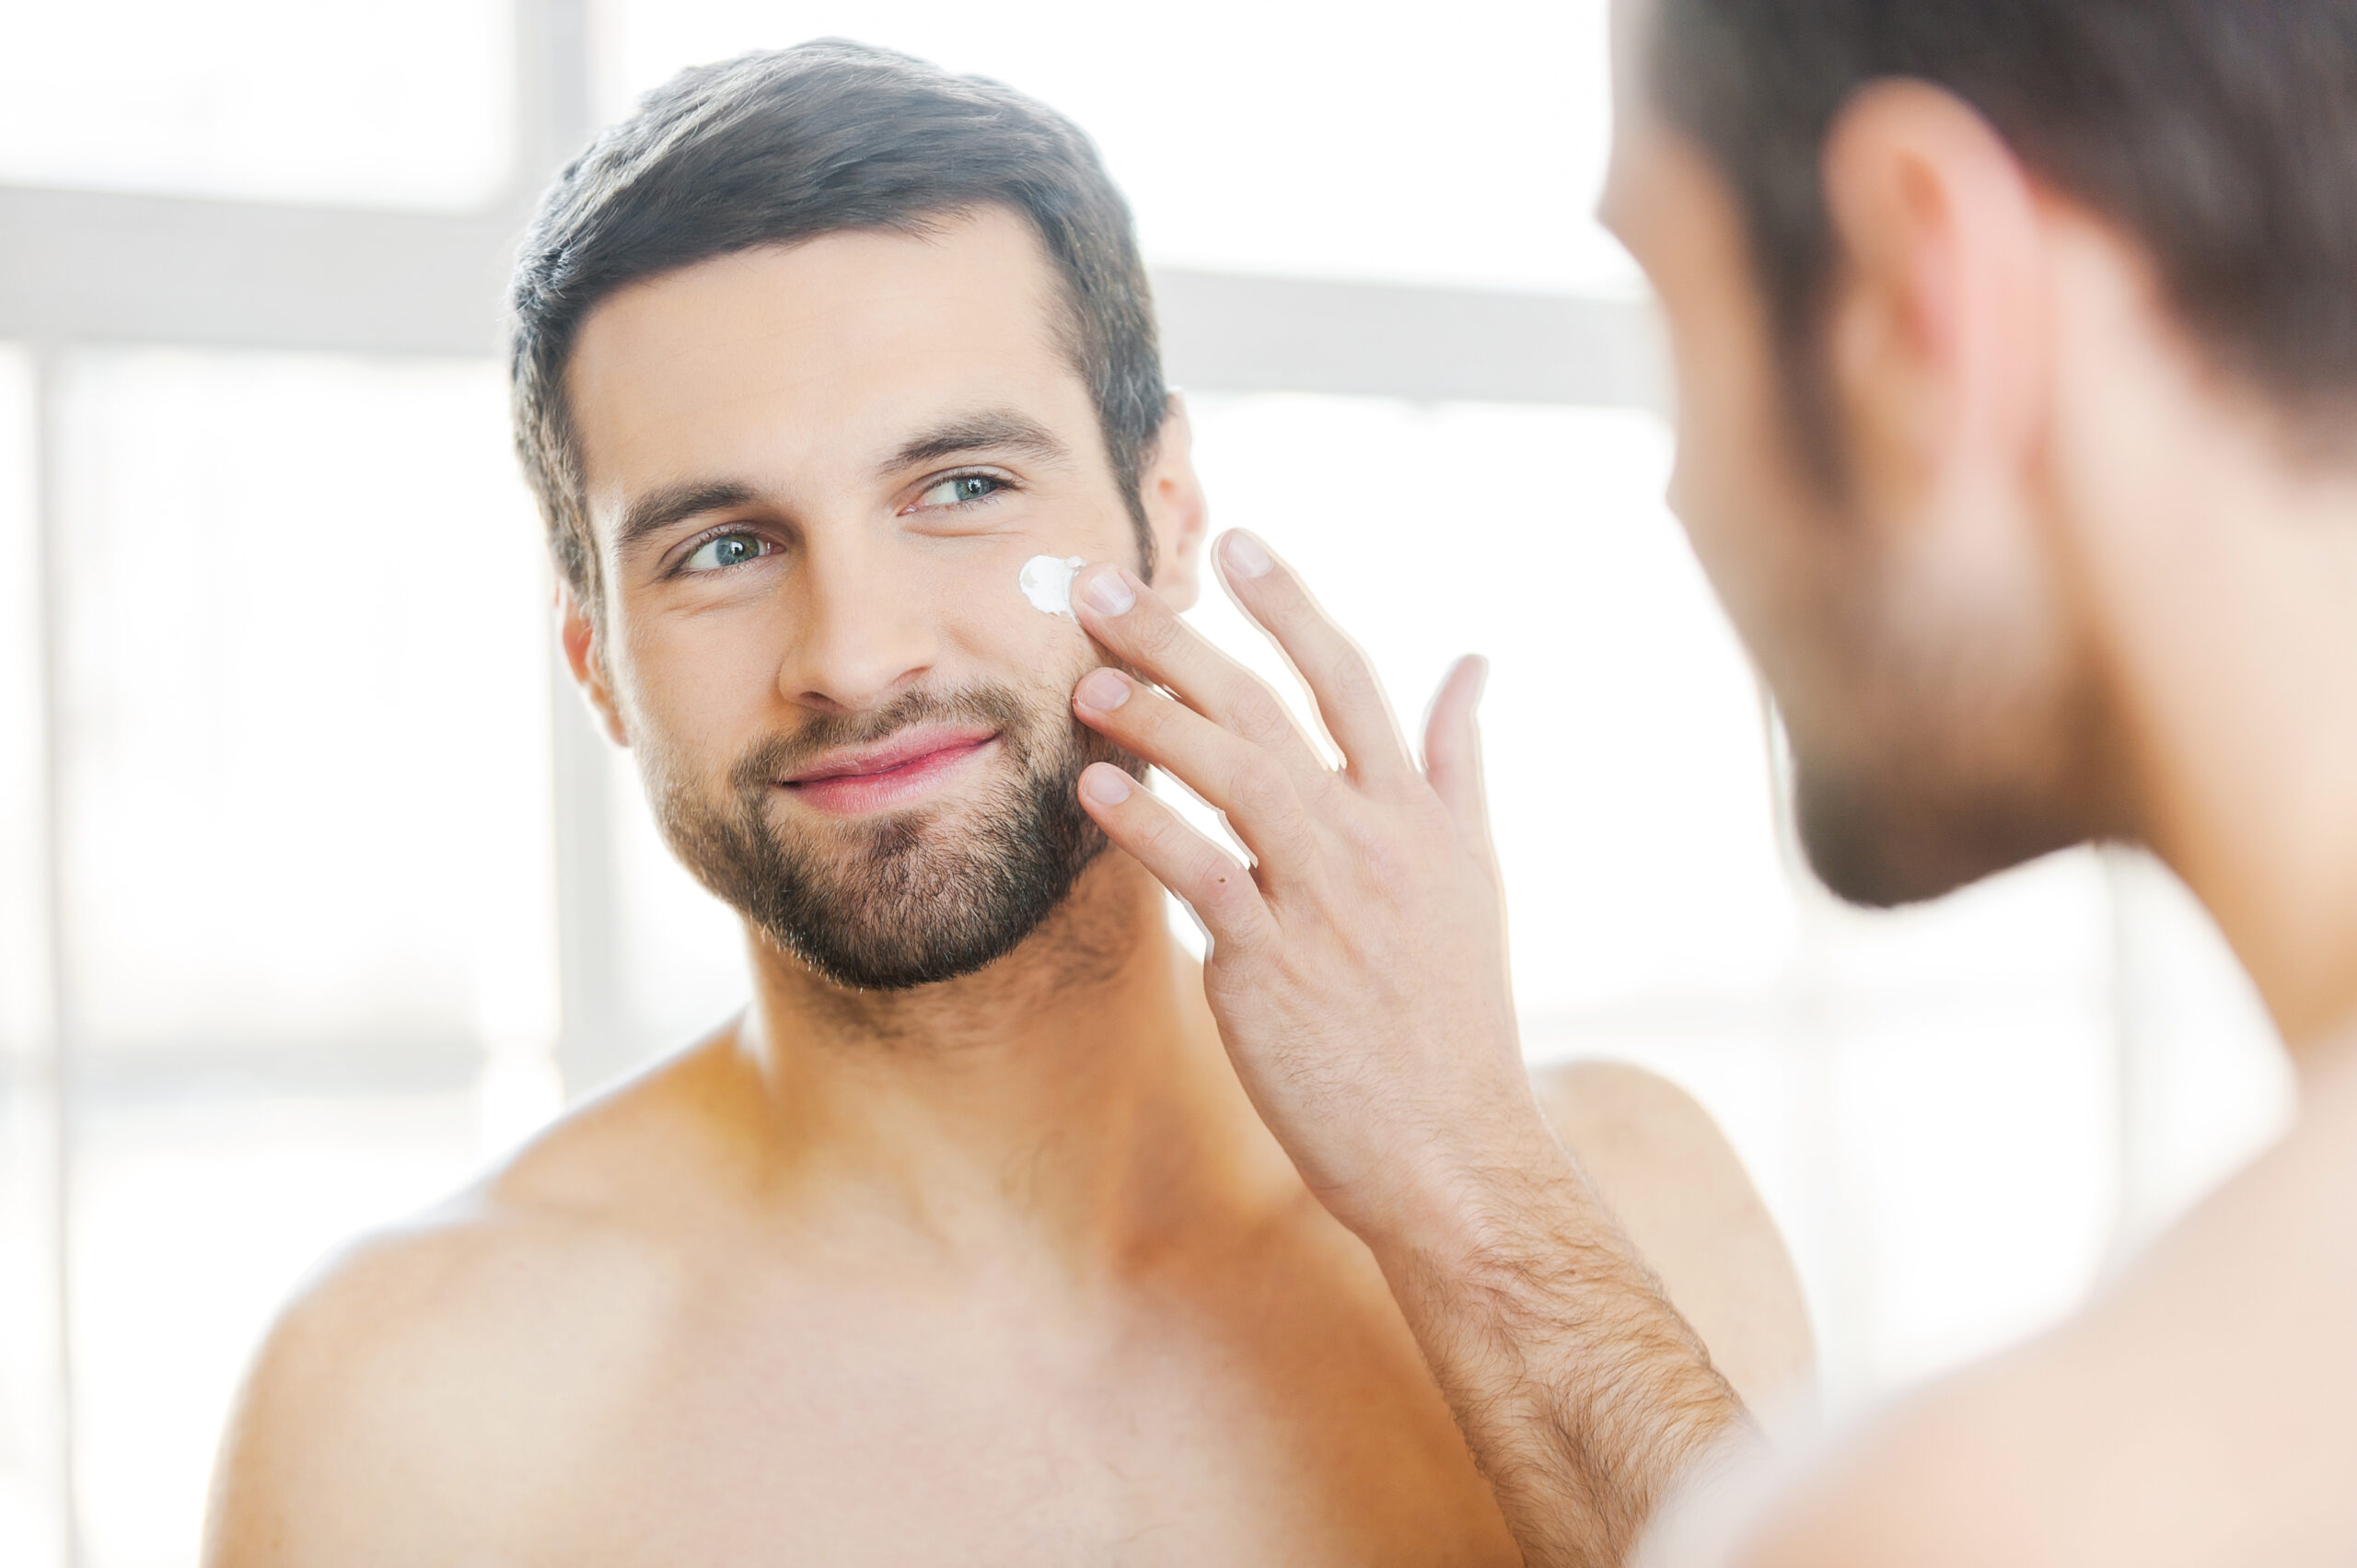 Soin visage homme : comment nettoyer sa peau ? - Magazine Avantages